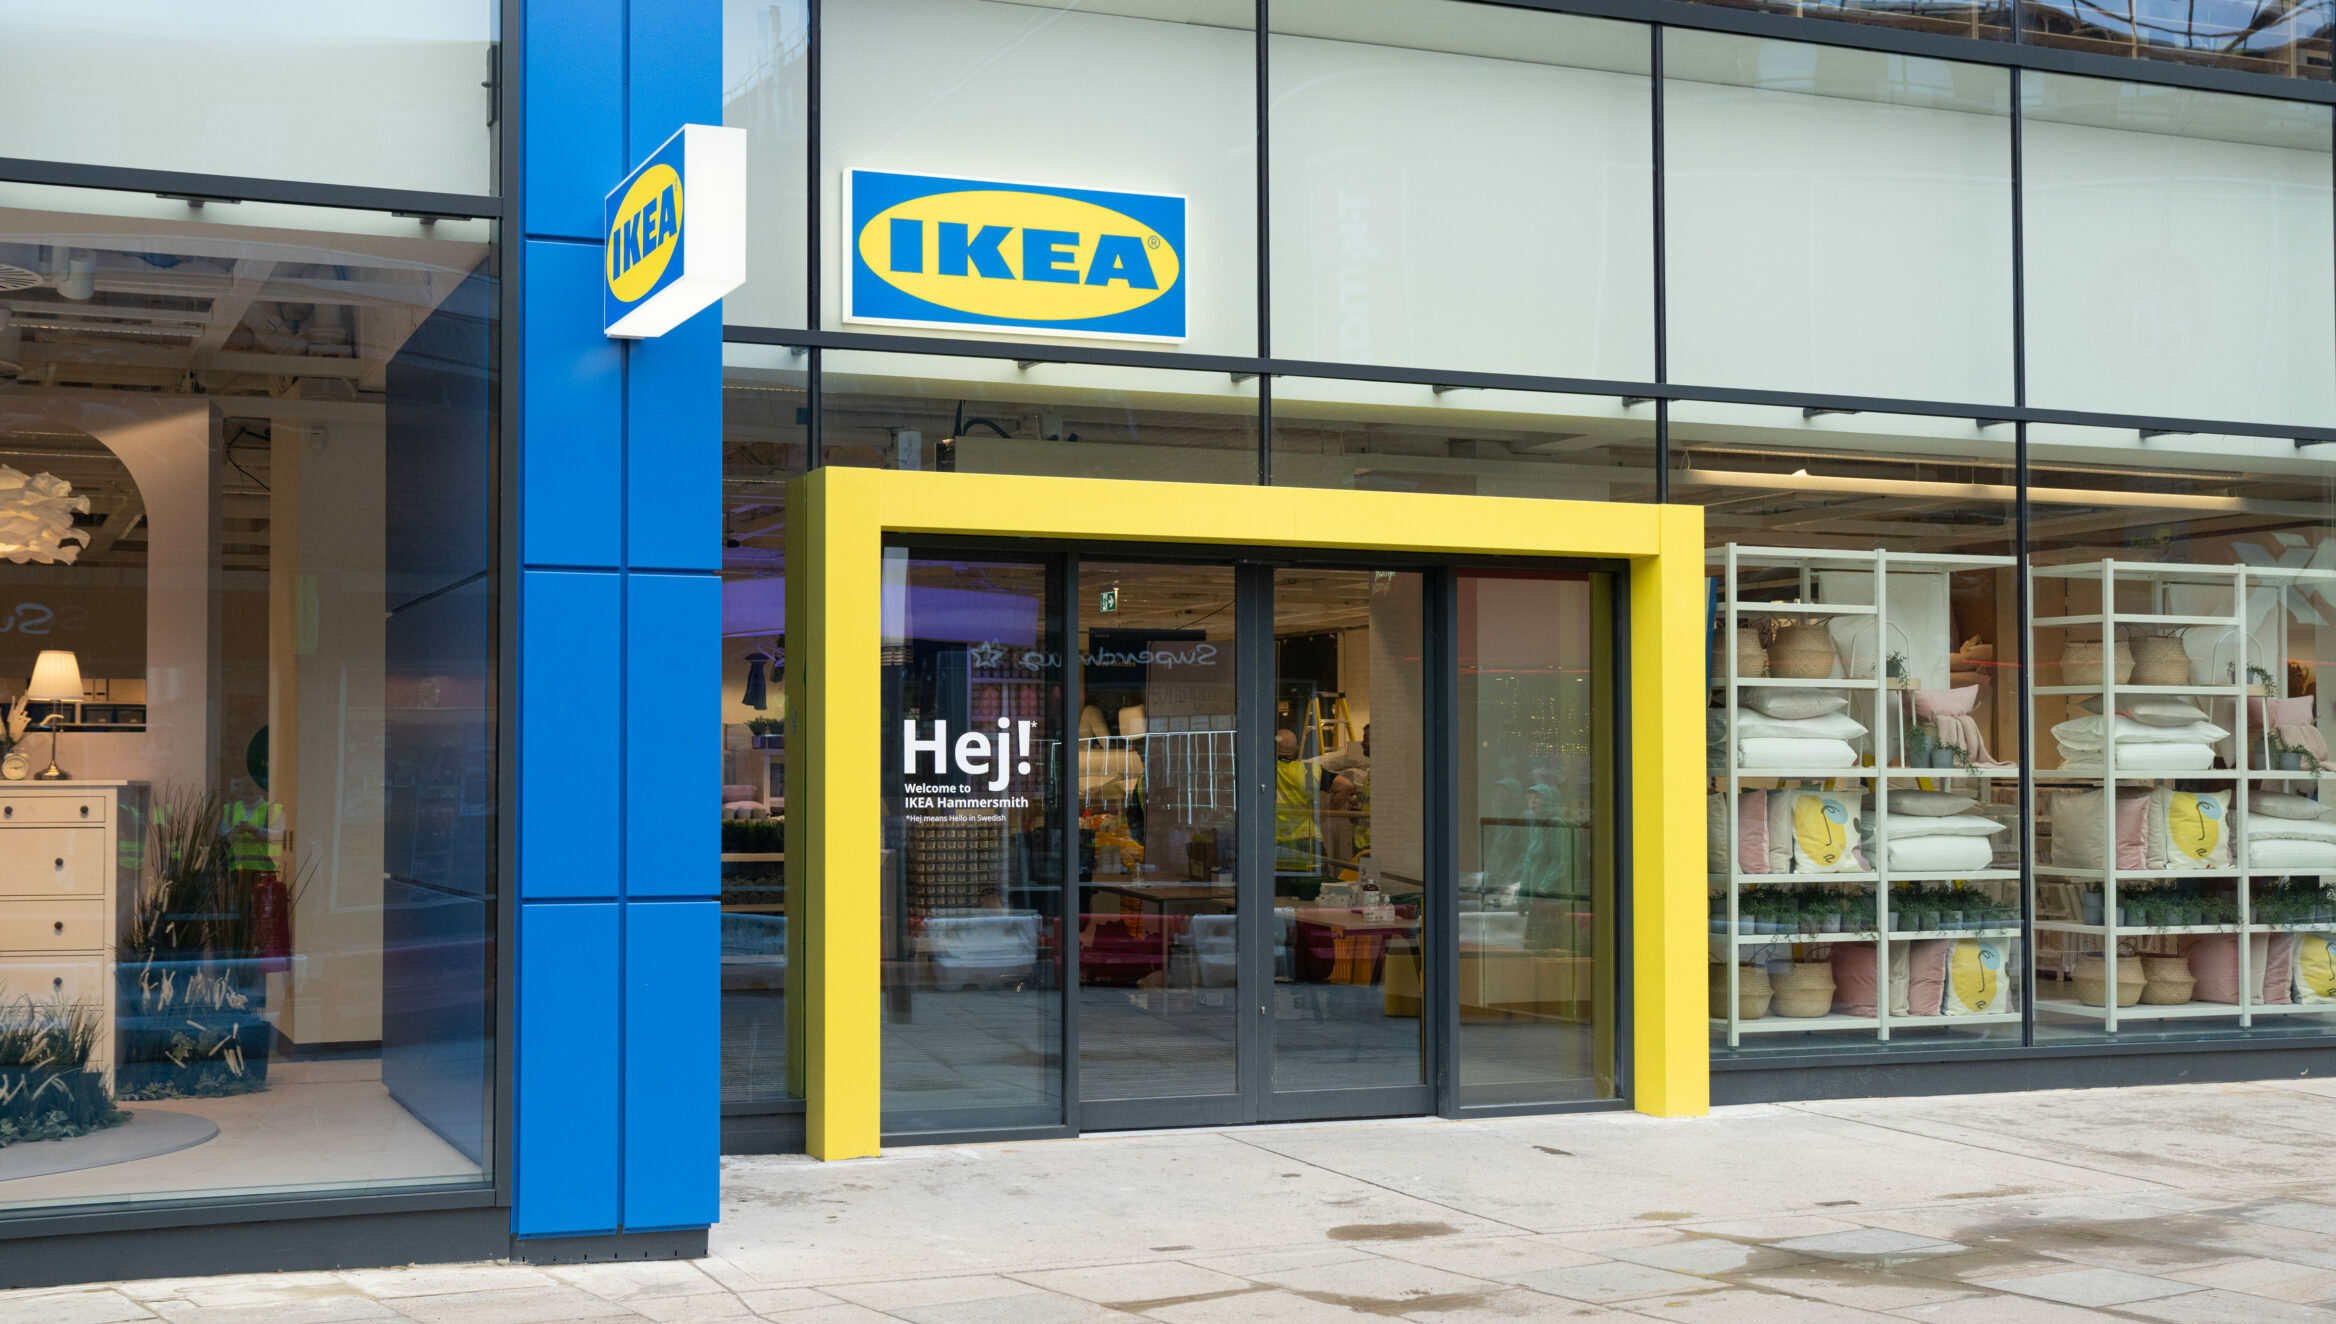 IKEA Hammersmith